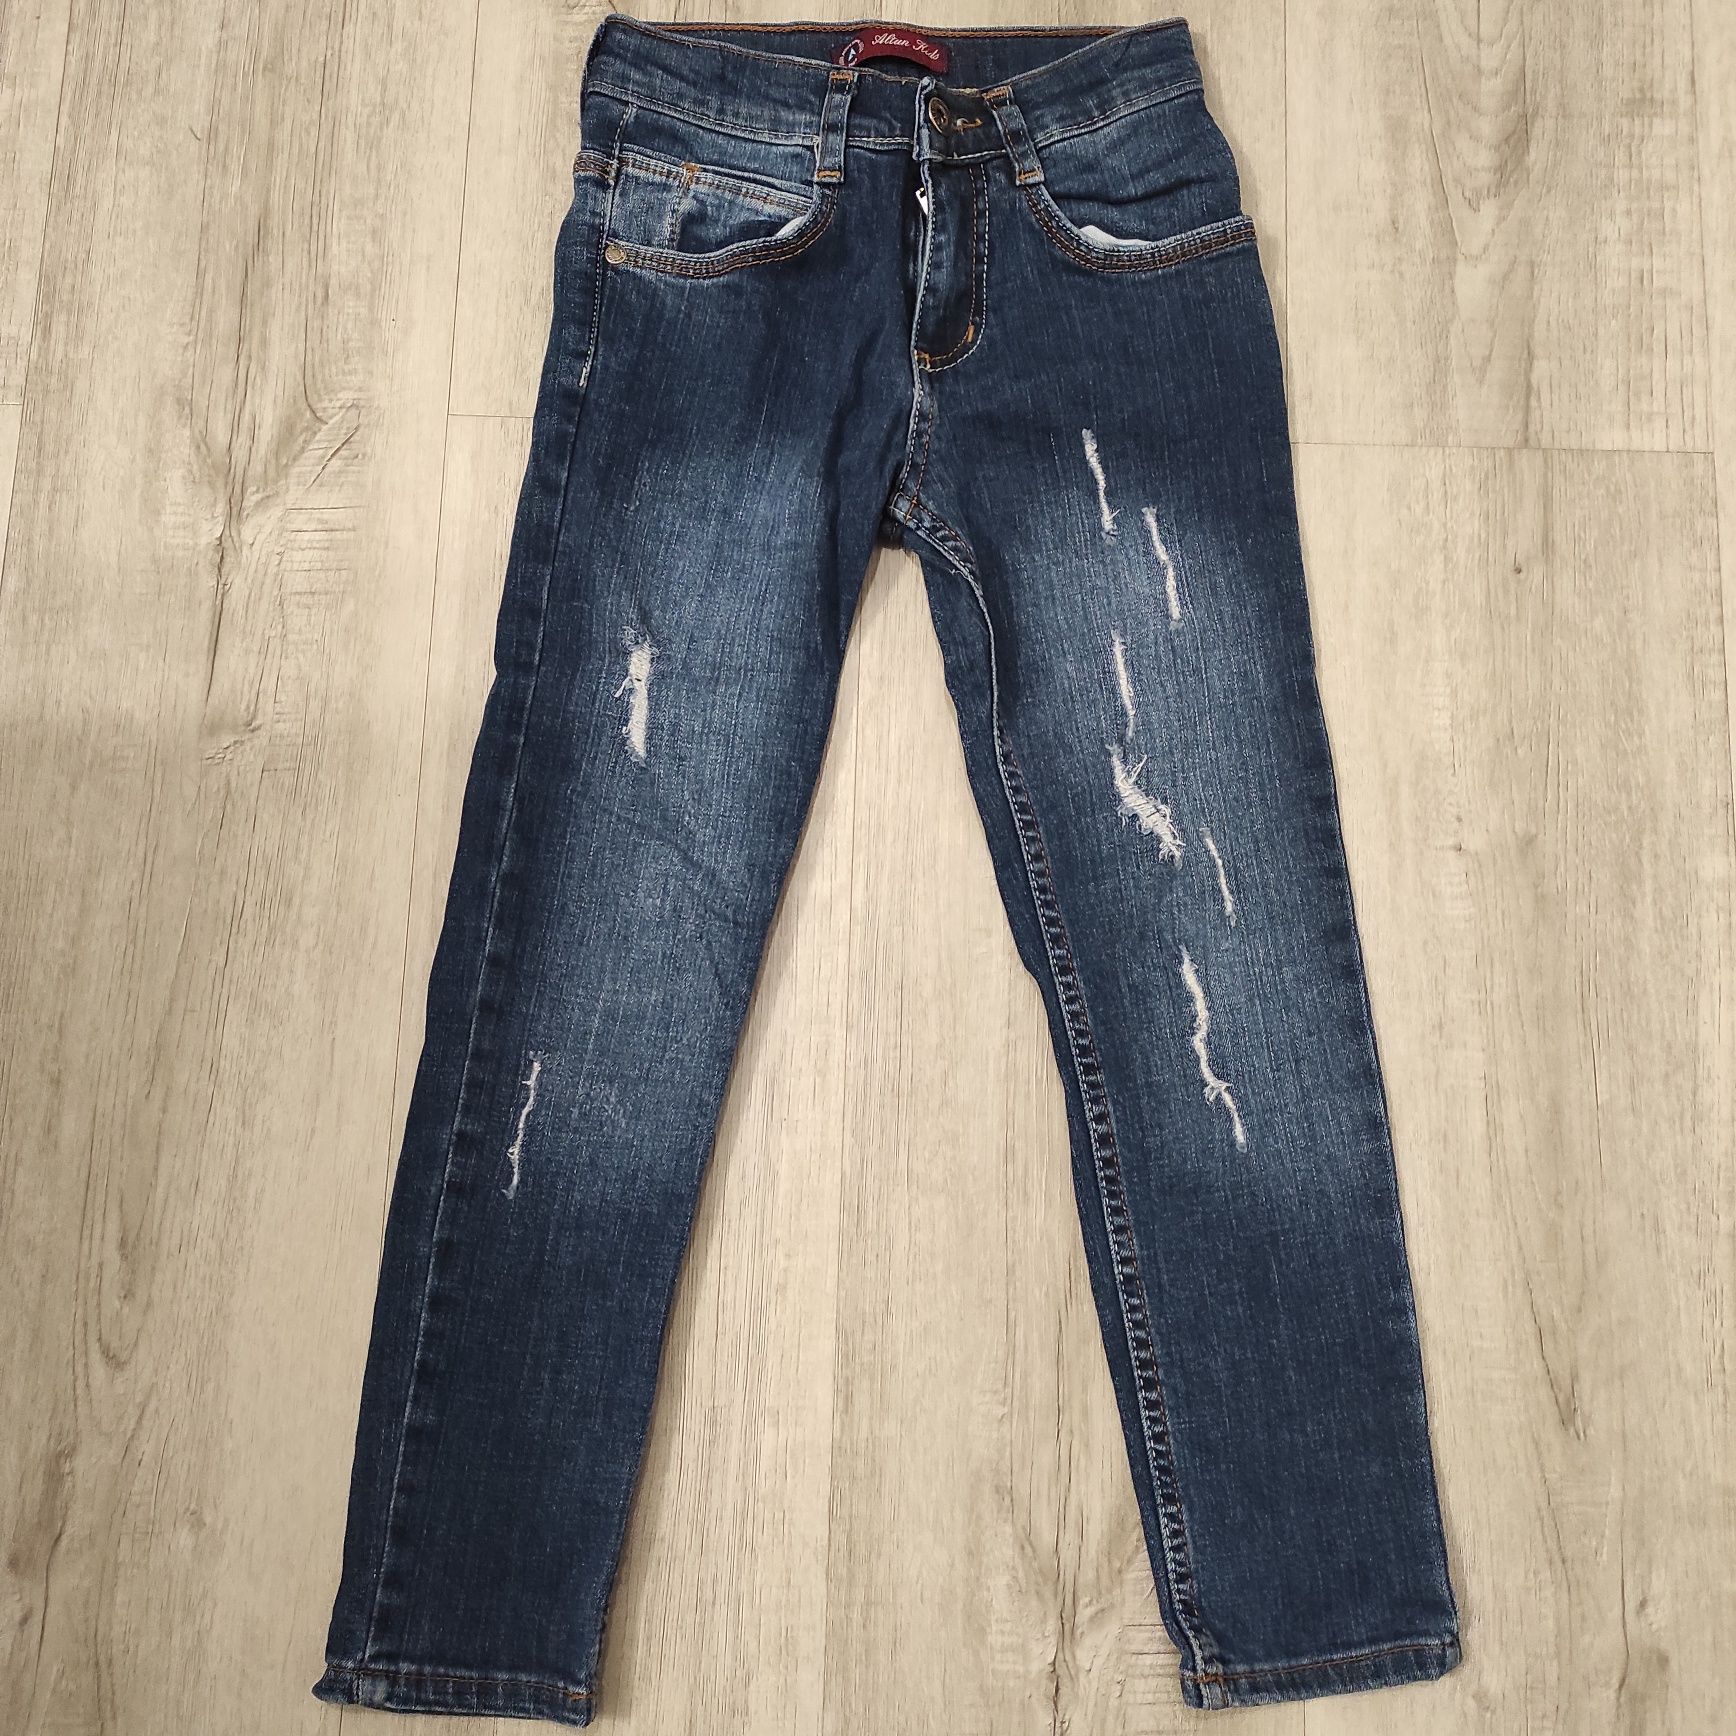 Spodnie jeansowe 116 cm